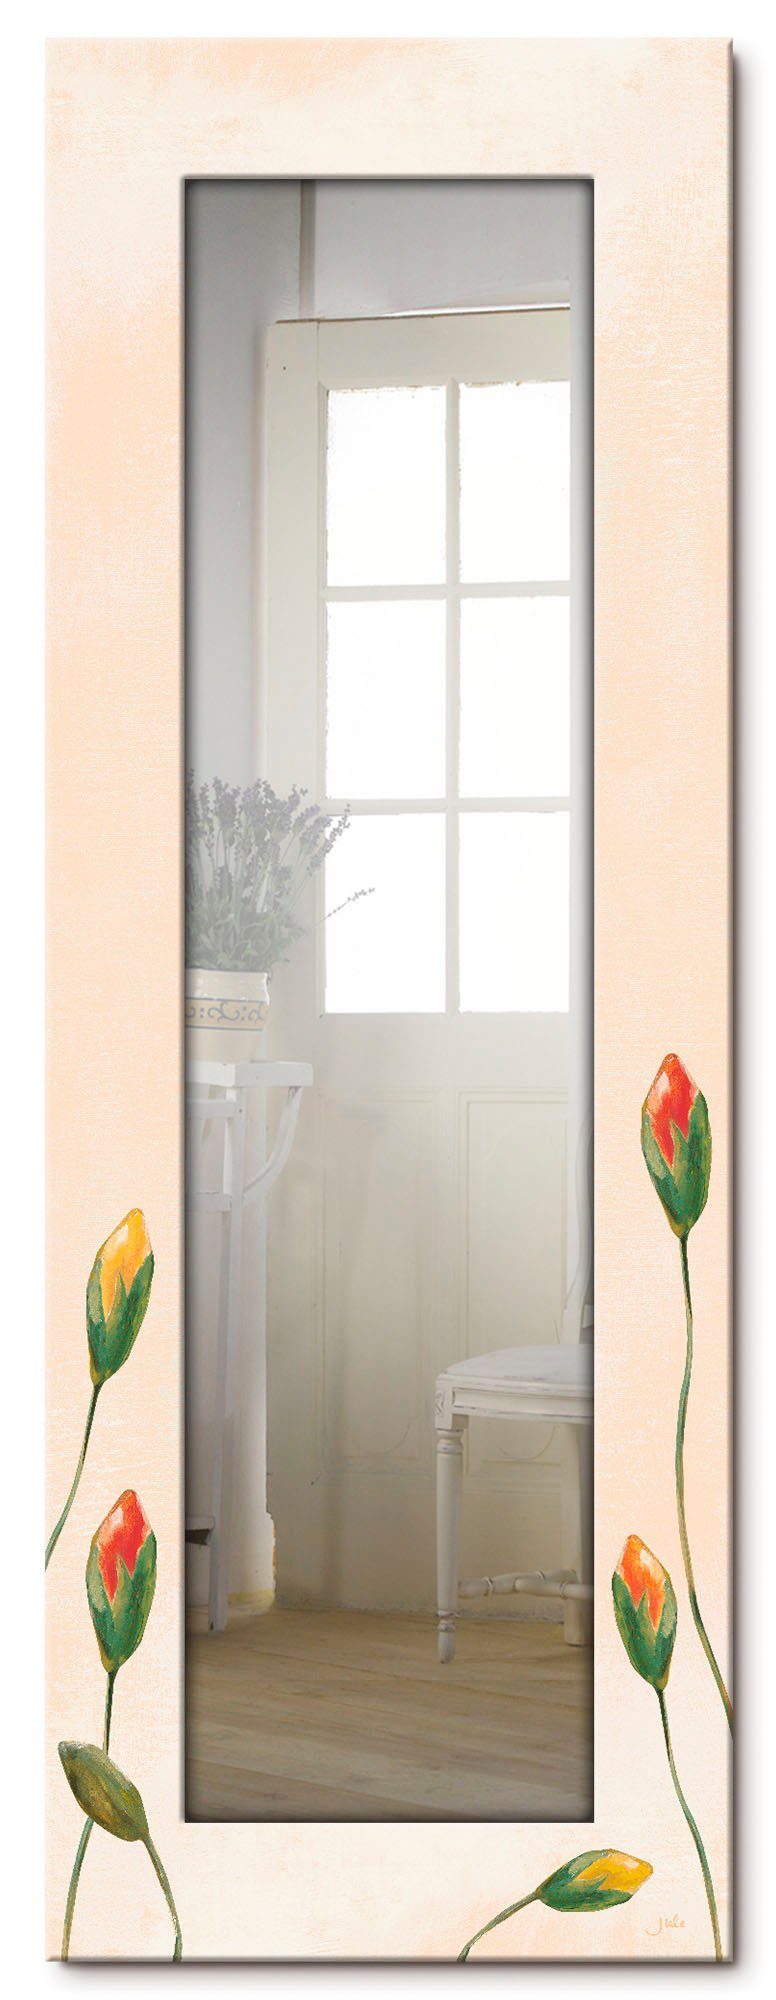 Artland Sierspiegel Veelkleurige klaprozen ingelijste spiegel voor het hele lichaam met motiefrand, geschikt voor kleine, smalle hal, halspiegel, mirror spiegel omrand om op te han